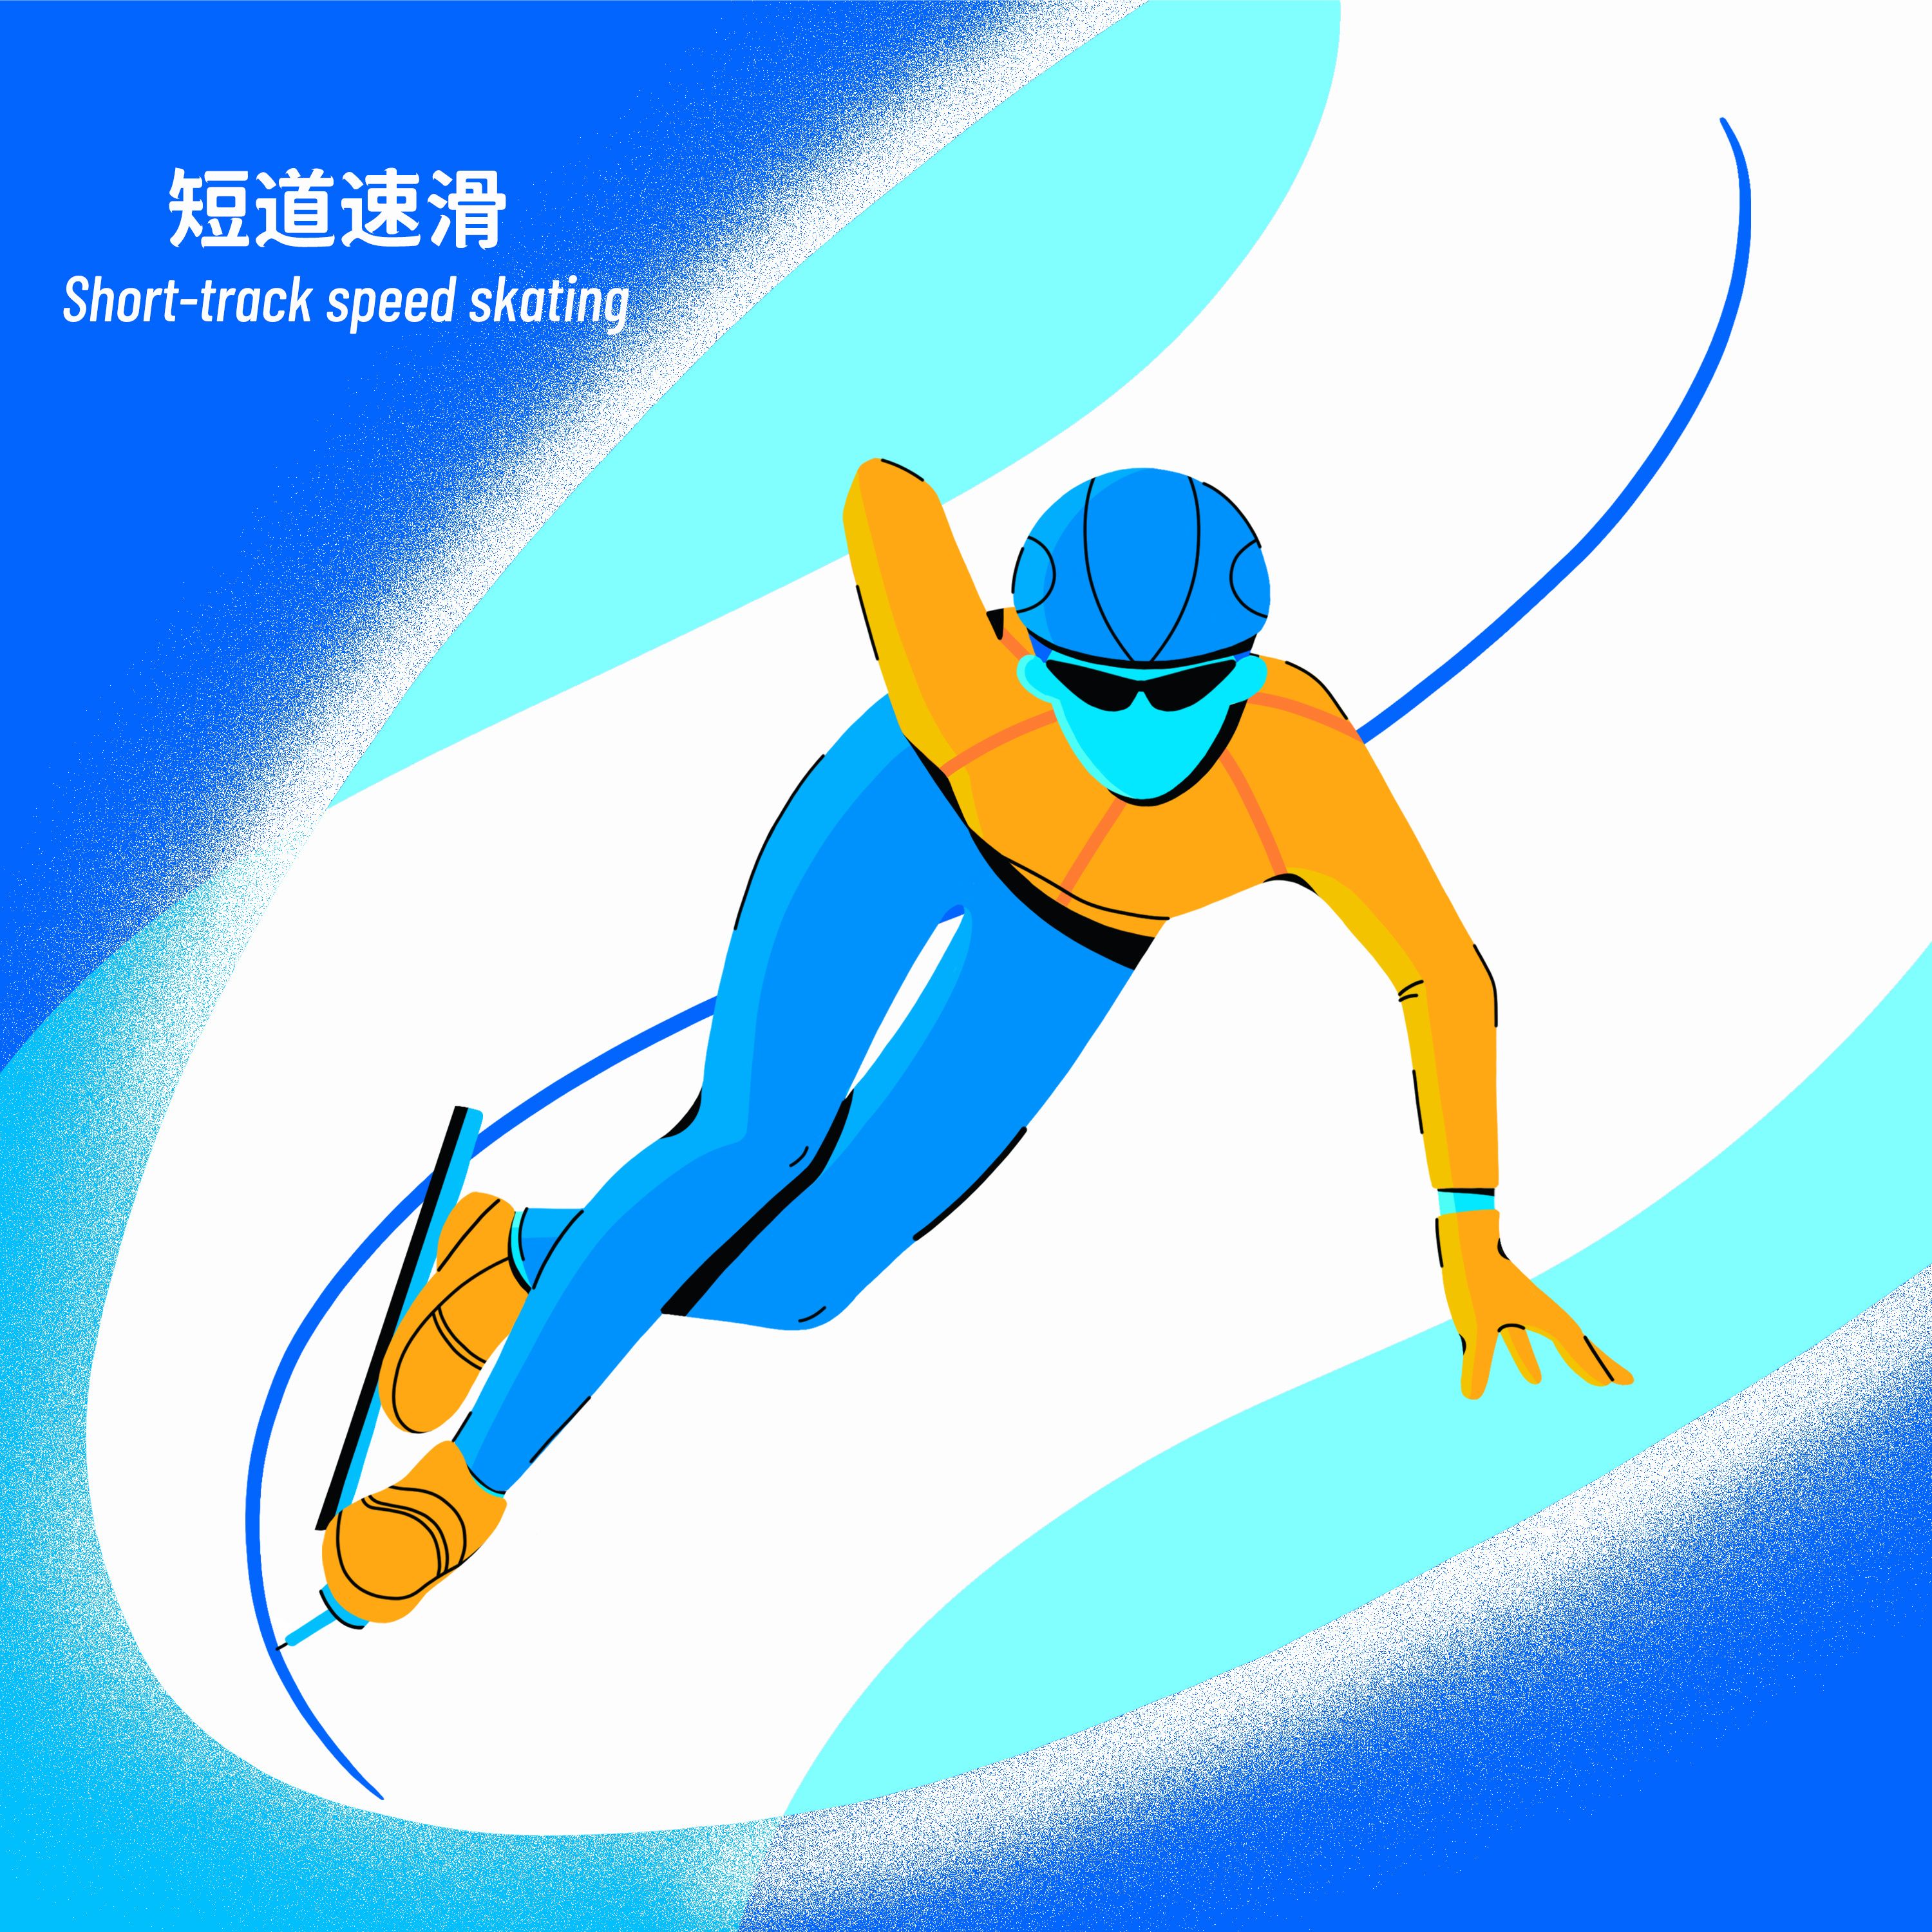 2022年冬奥会卡通形象图片